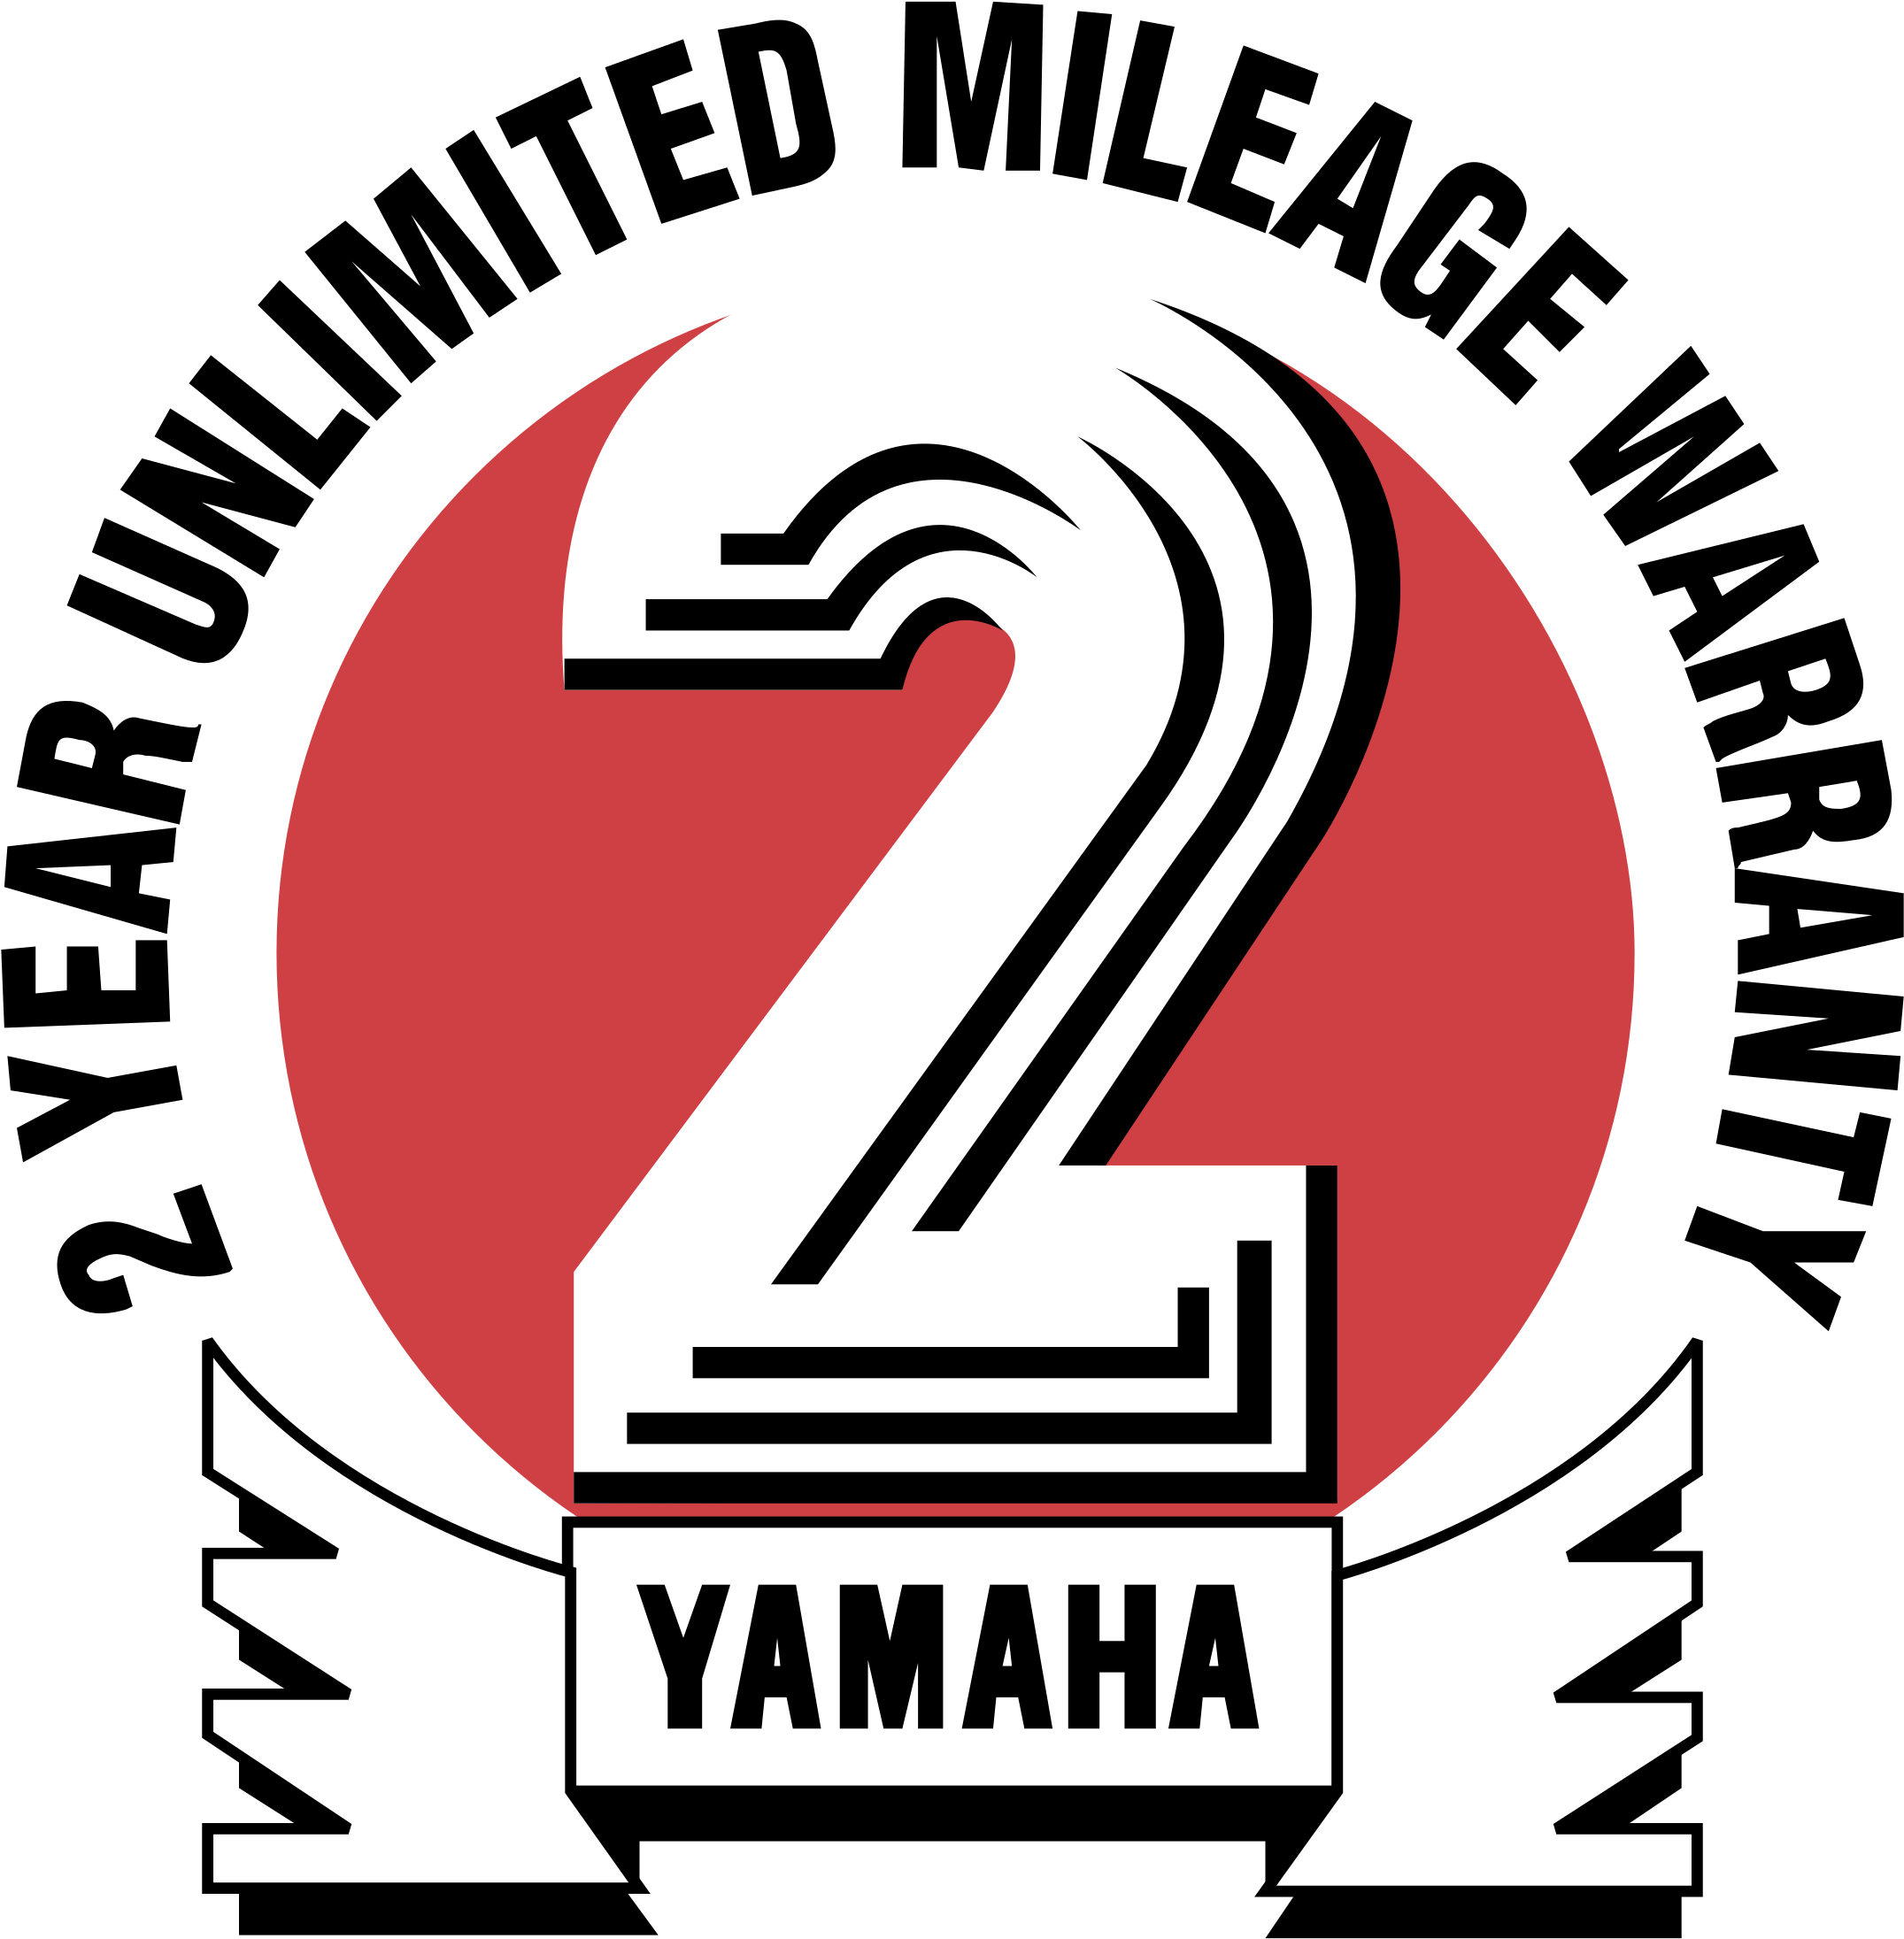 Yamaha Racing Logo PNG Vectors Free Download